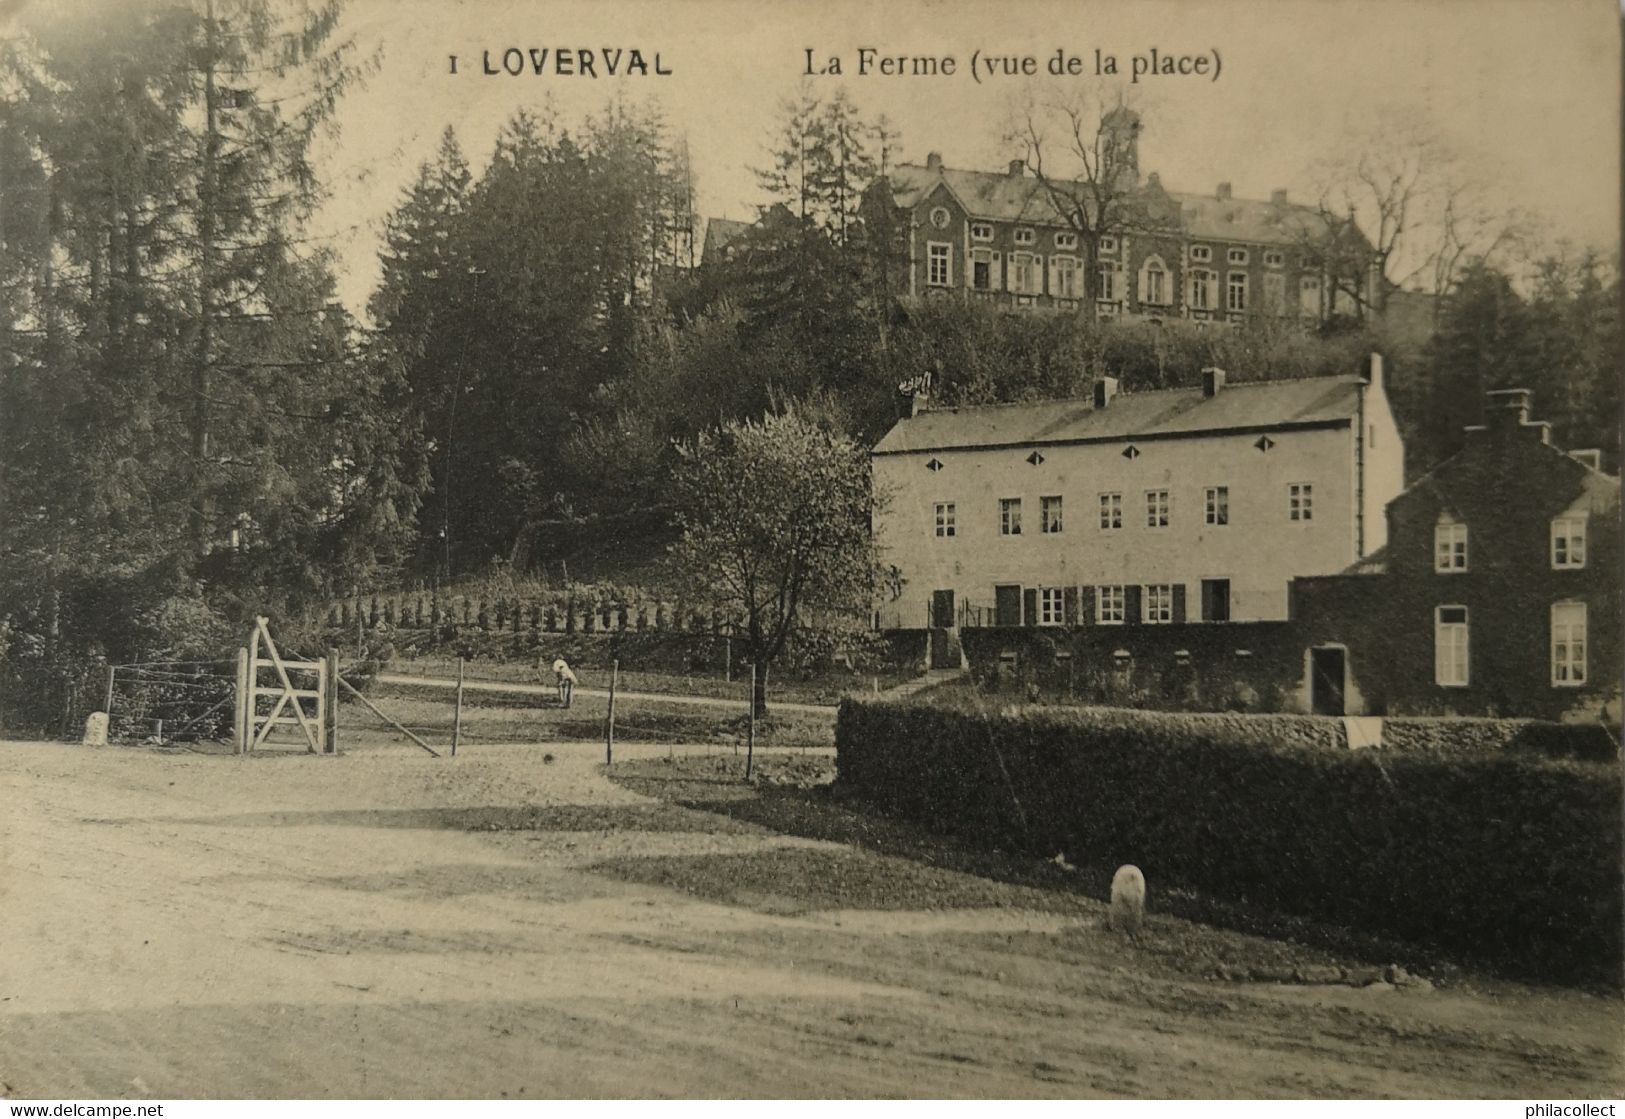 Loverval (Gerpinnes) LA Ferme (Vue De La Place) 1936 - Gerpinnes